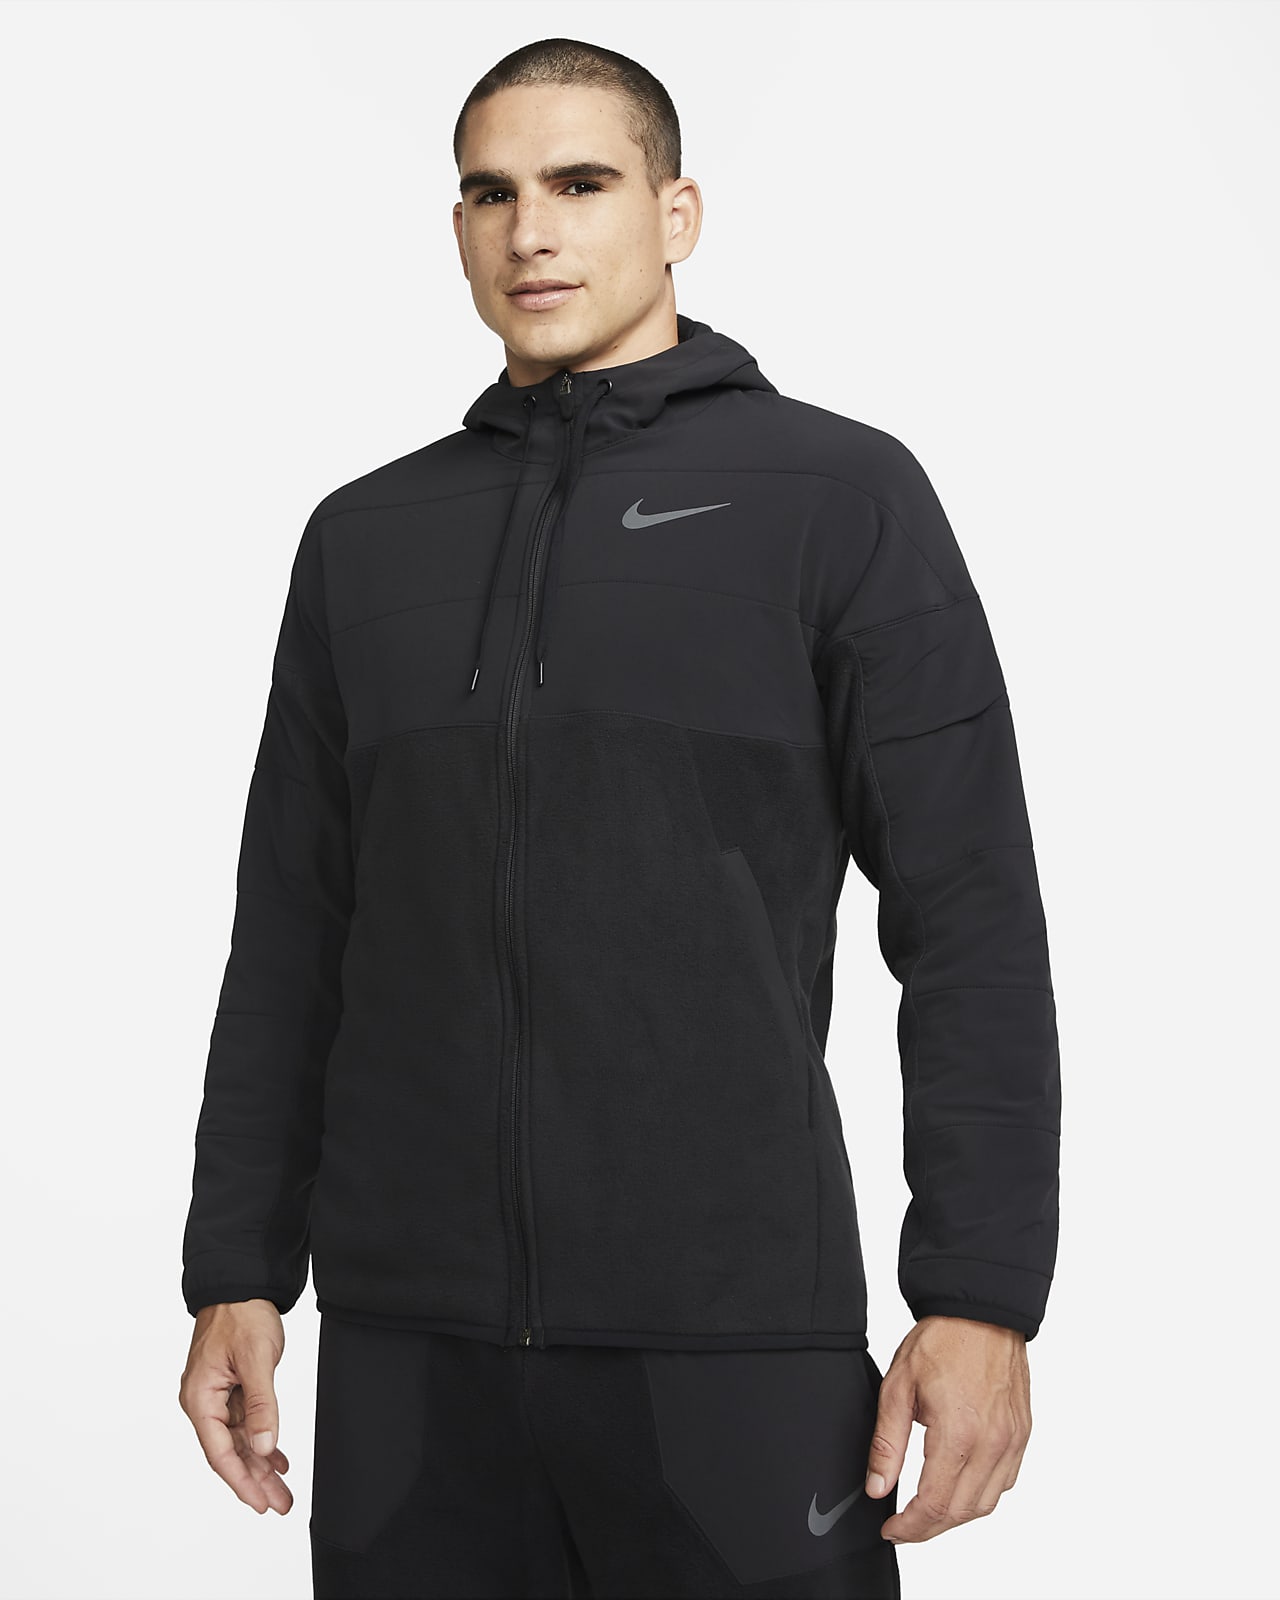 Felpa da training con cappuccio per l'inverno con zip a tutta lunghezza Nike Therma-FIT - Uomo